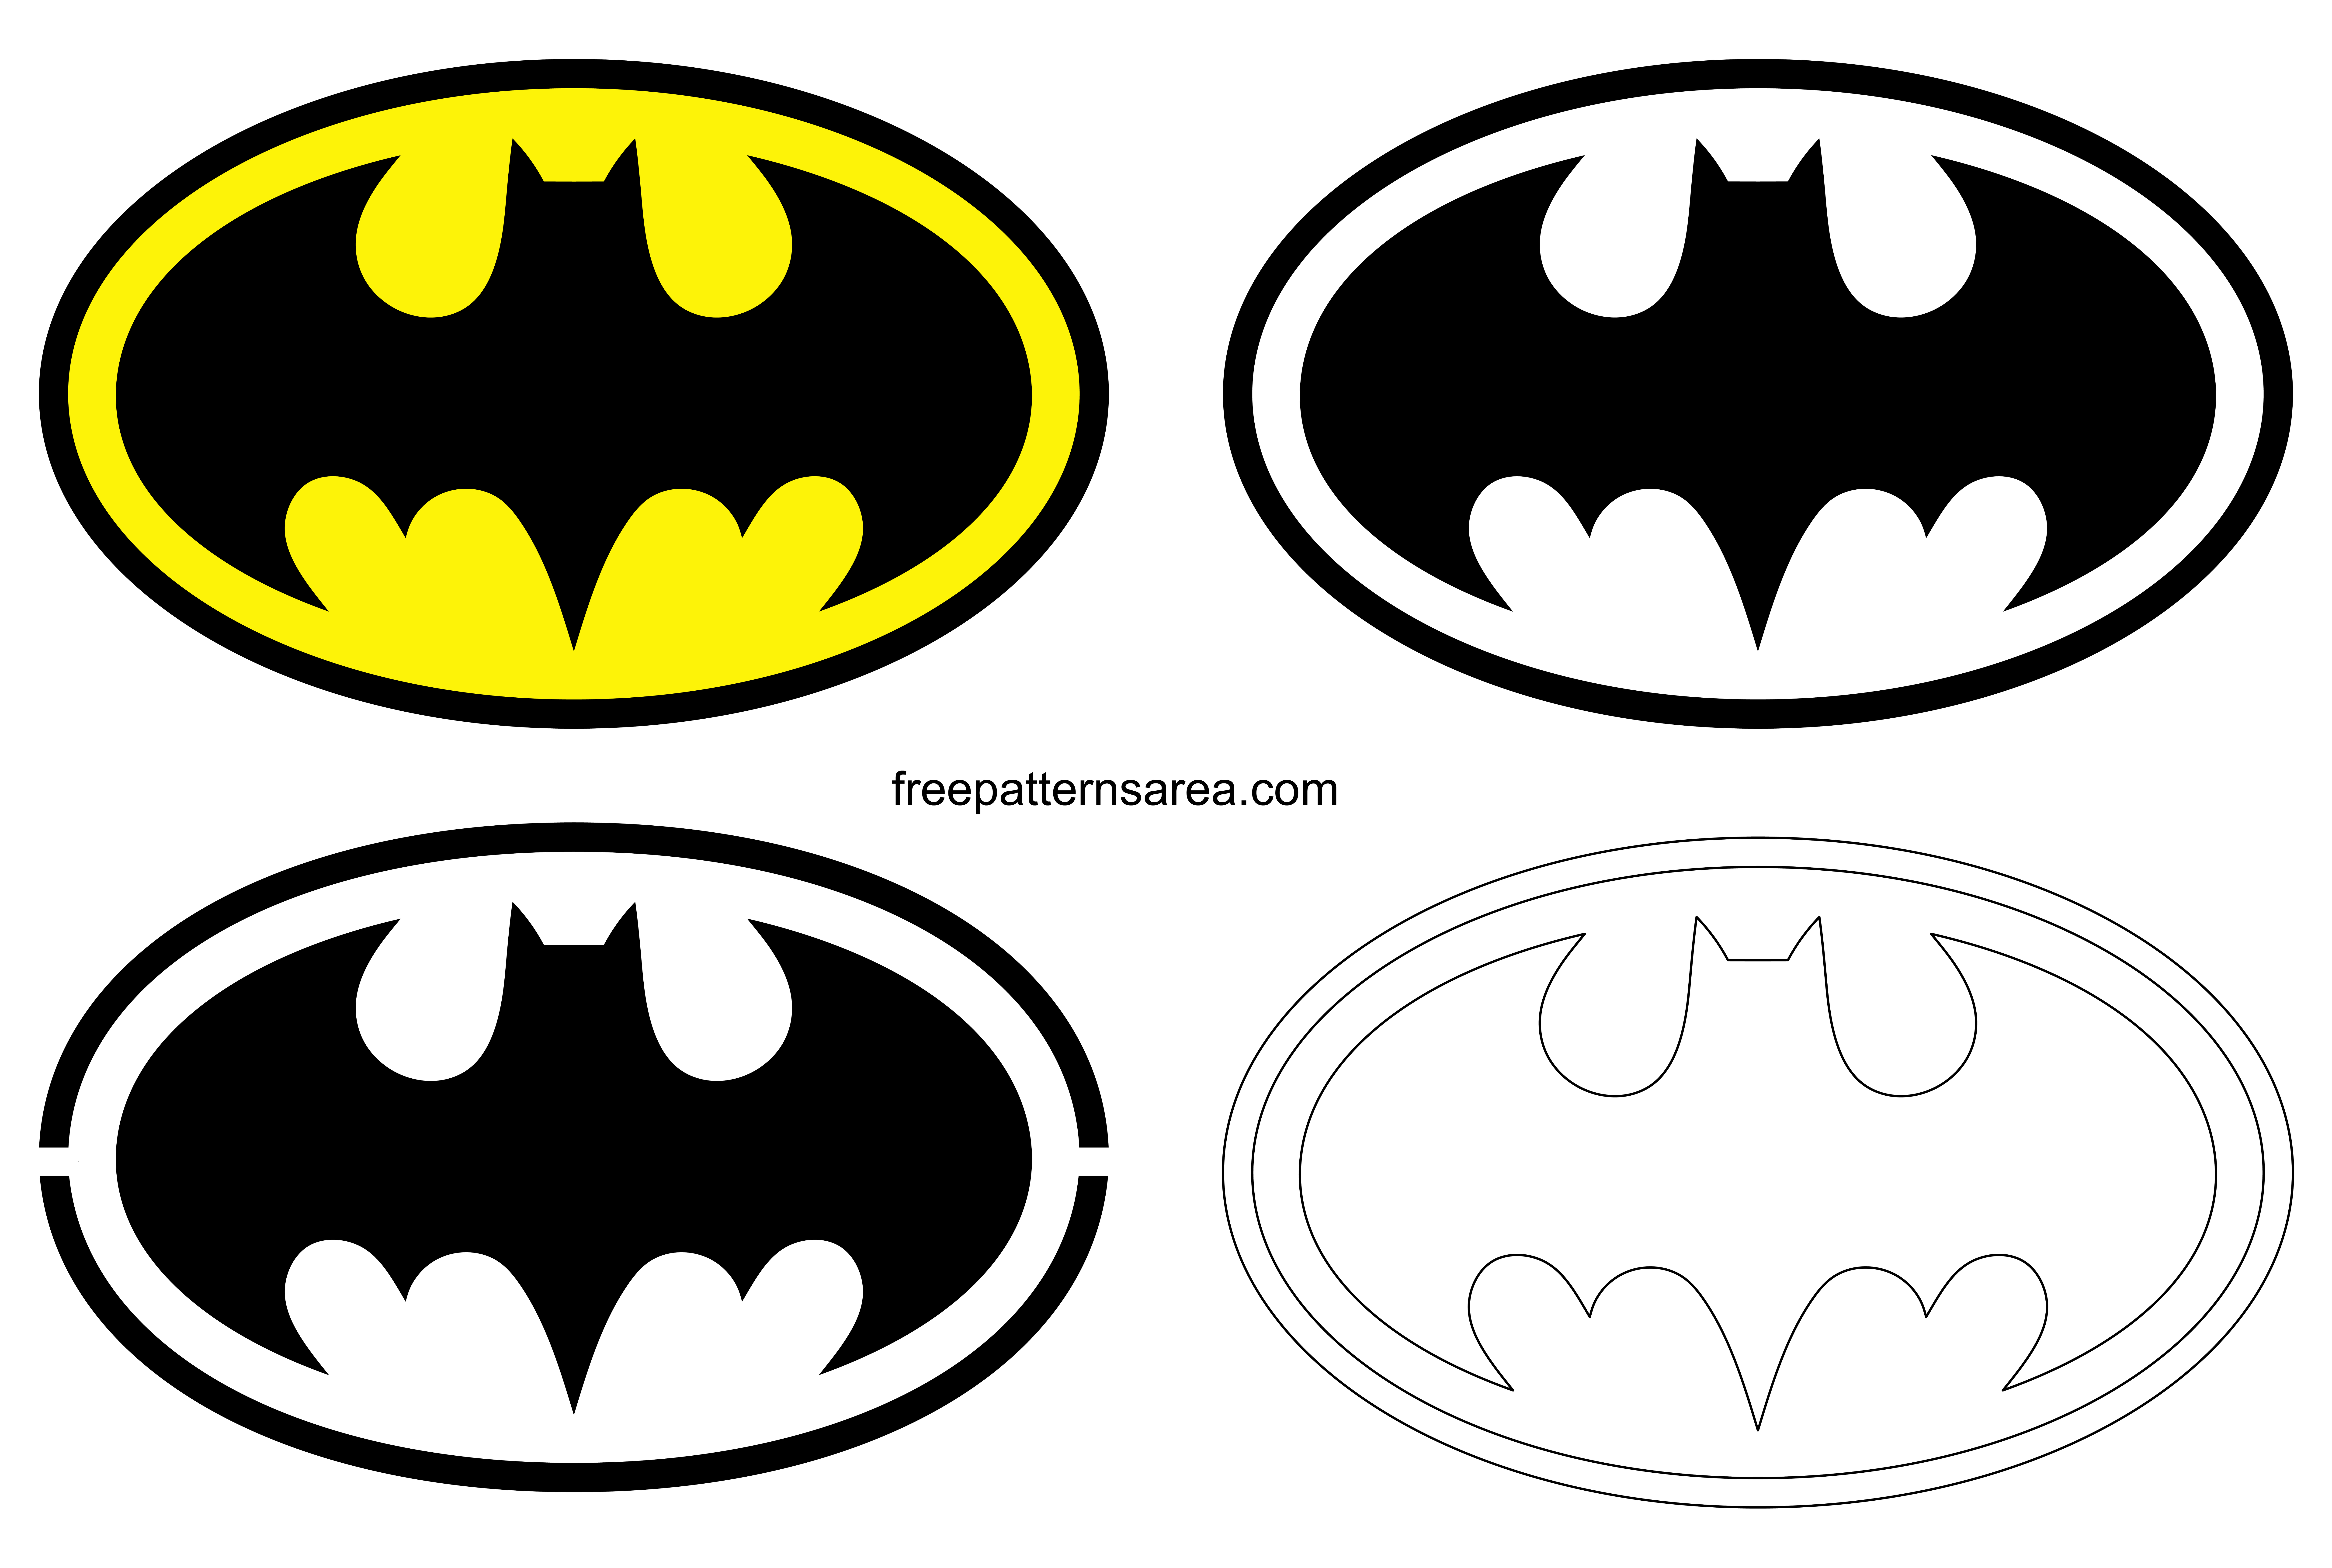 Batman Logo Symbol and Silhouette Stencil Vector